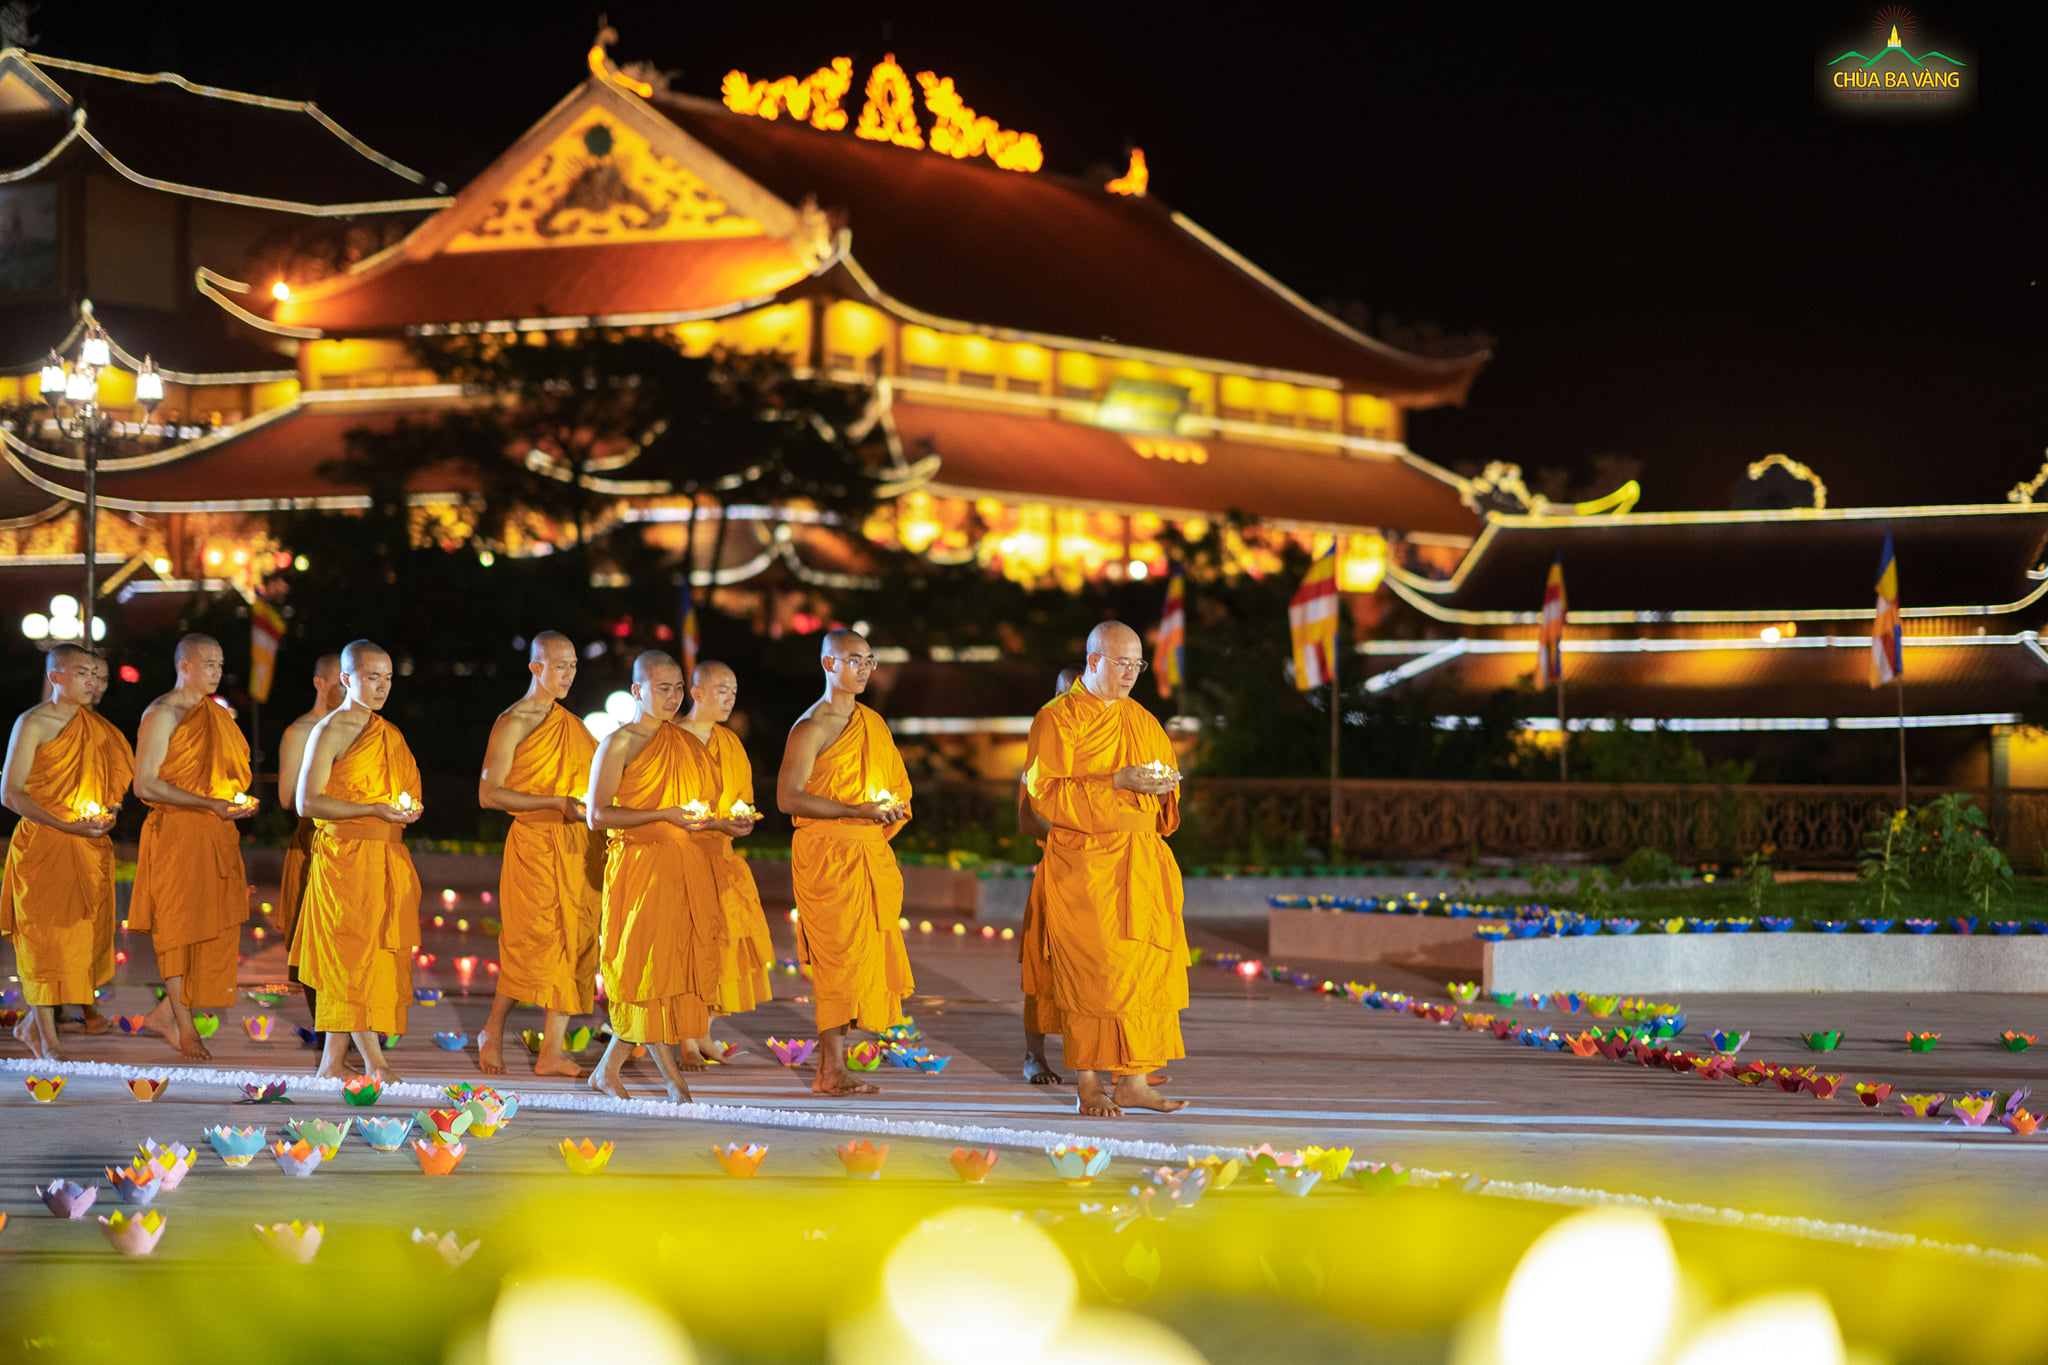 Sư Phụ Thích Trúc Thái Minh cùng chư Tăng nâng trên tay những ngọn đăng ngời sáng - biểu tượng cho trí tuệ của Phật Pháp